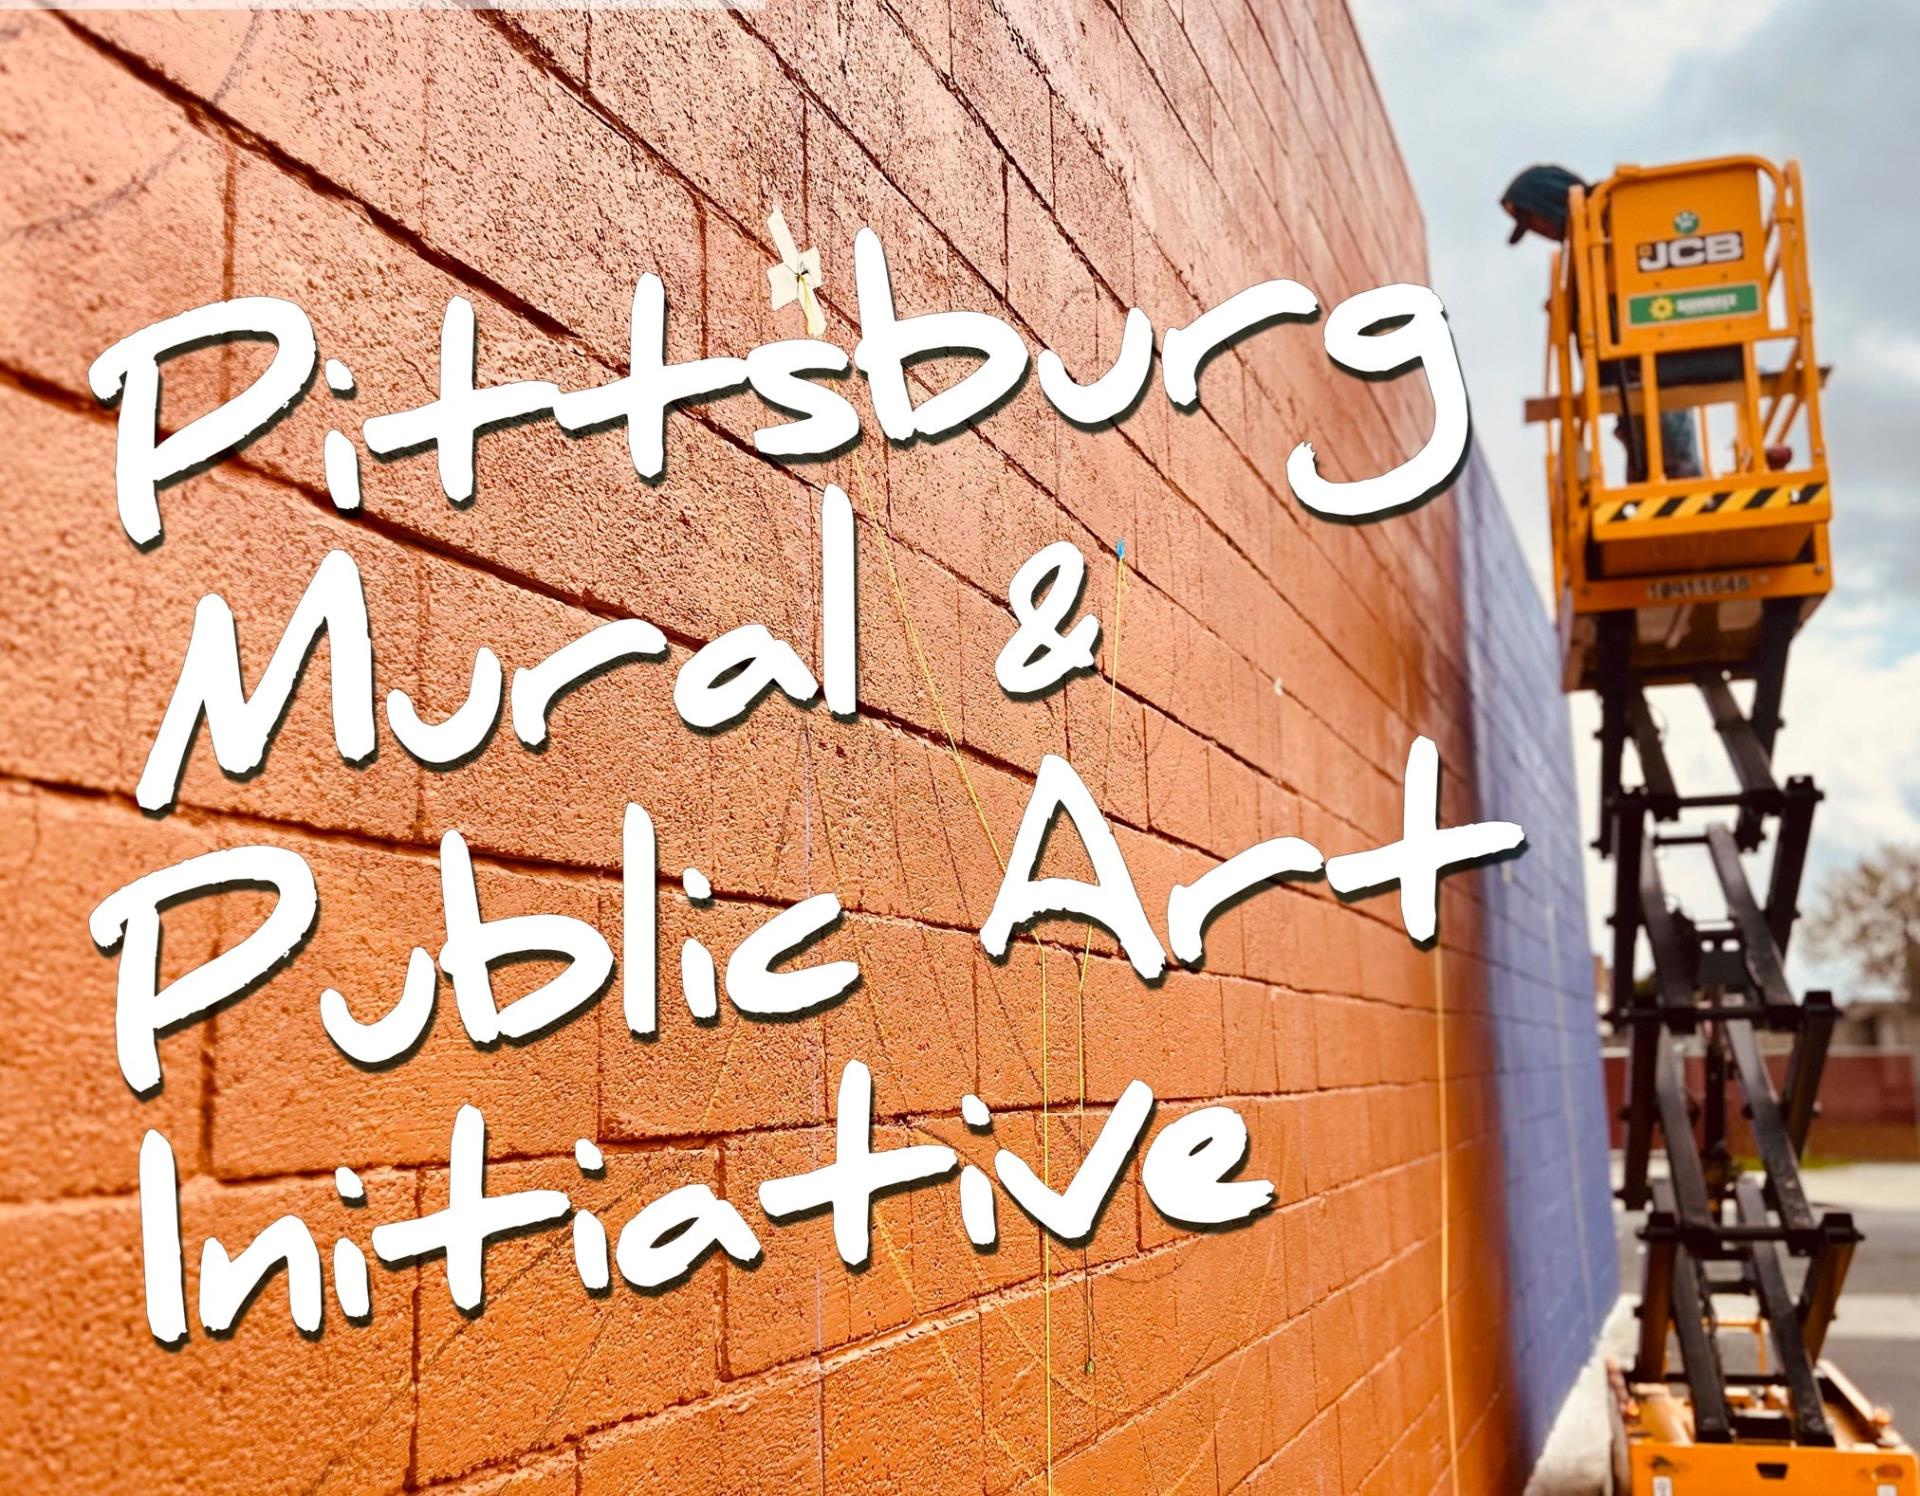 Pittsburg Mural & Public Art Initiative